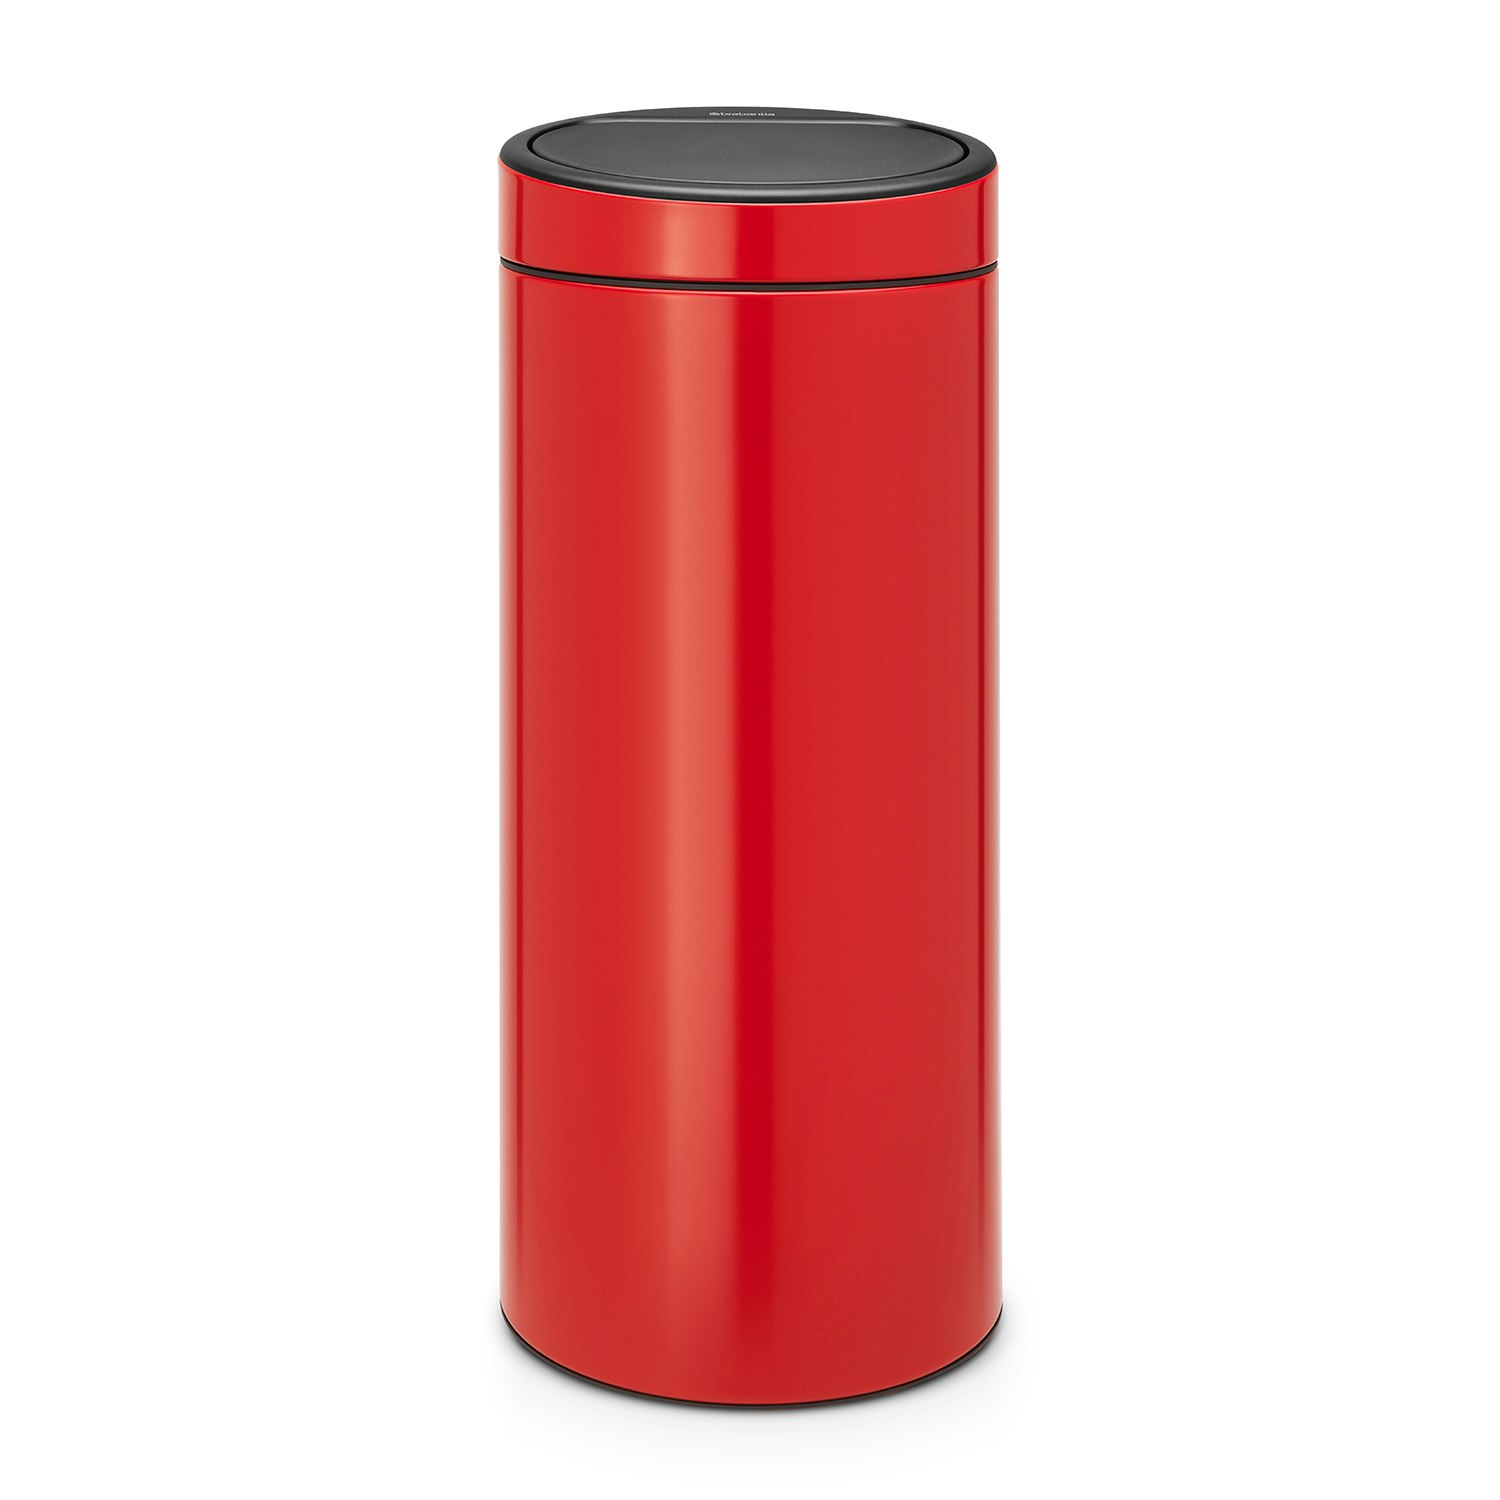 red garbage bin